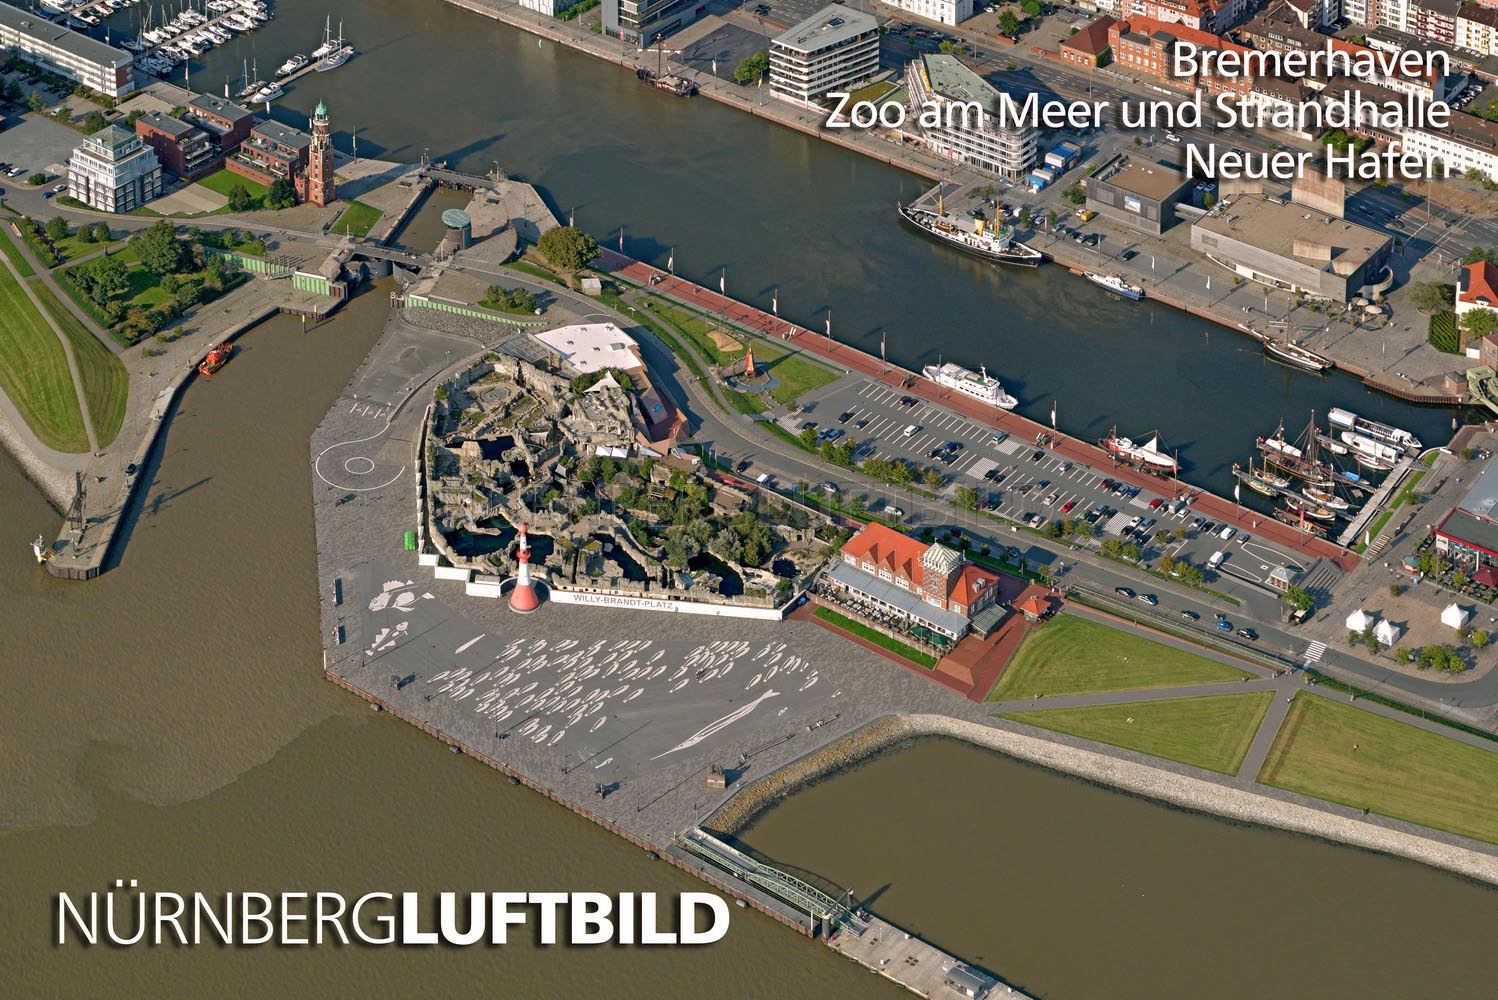 Bremerhaven, Zoo am Meer und Strandhalle, Neuer Hafen, Luftbild